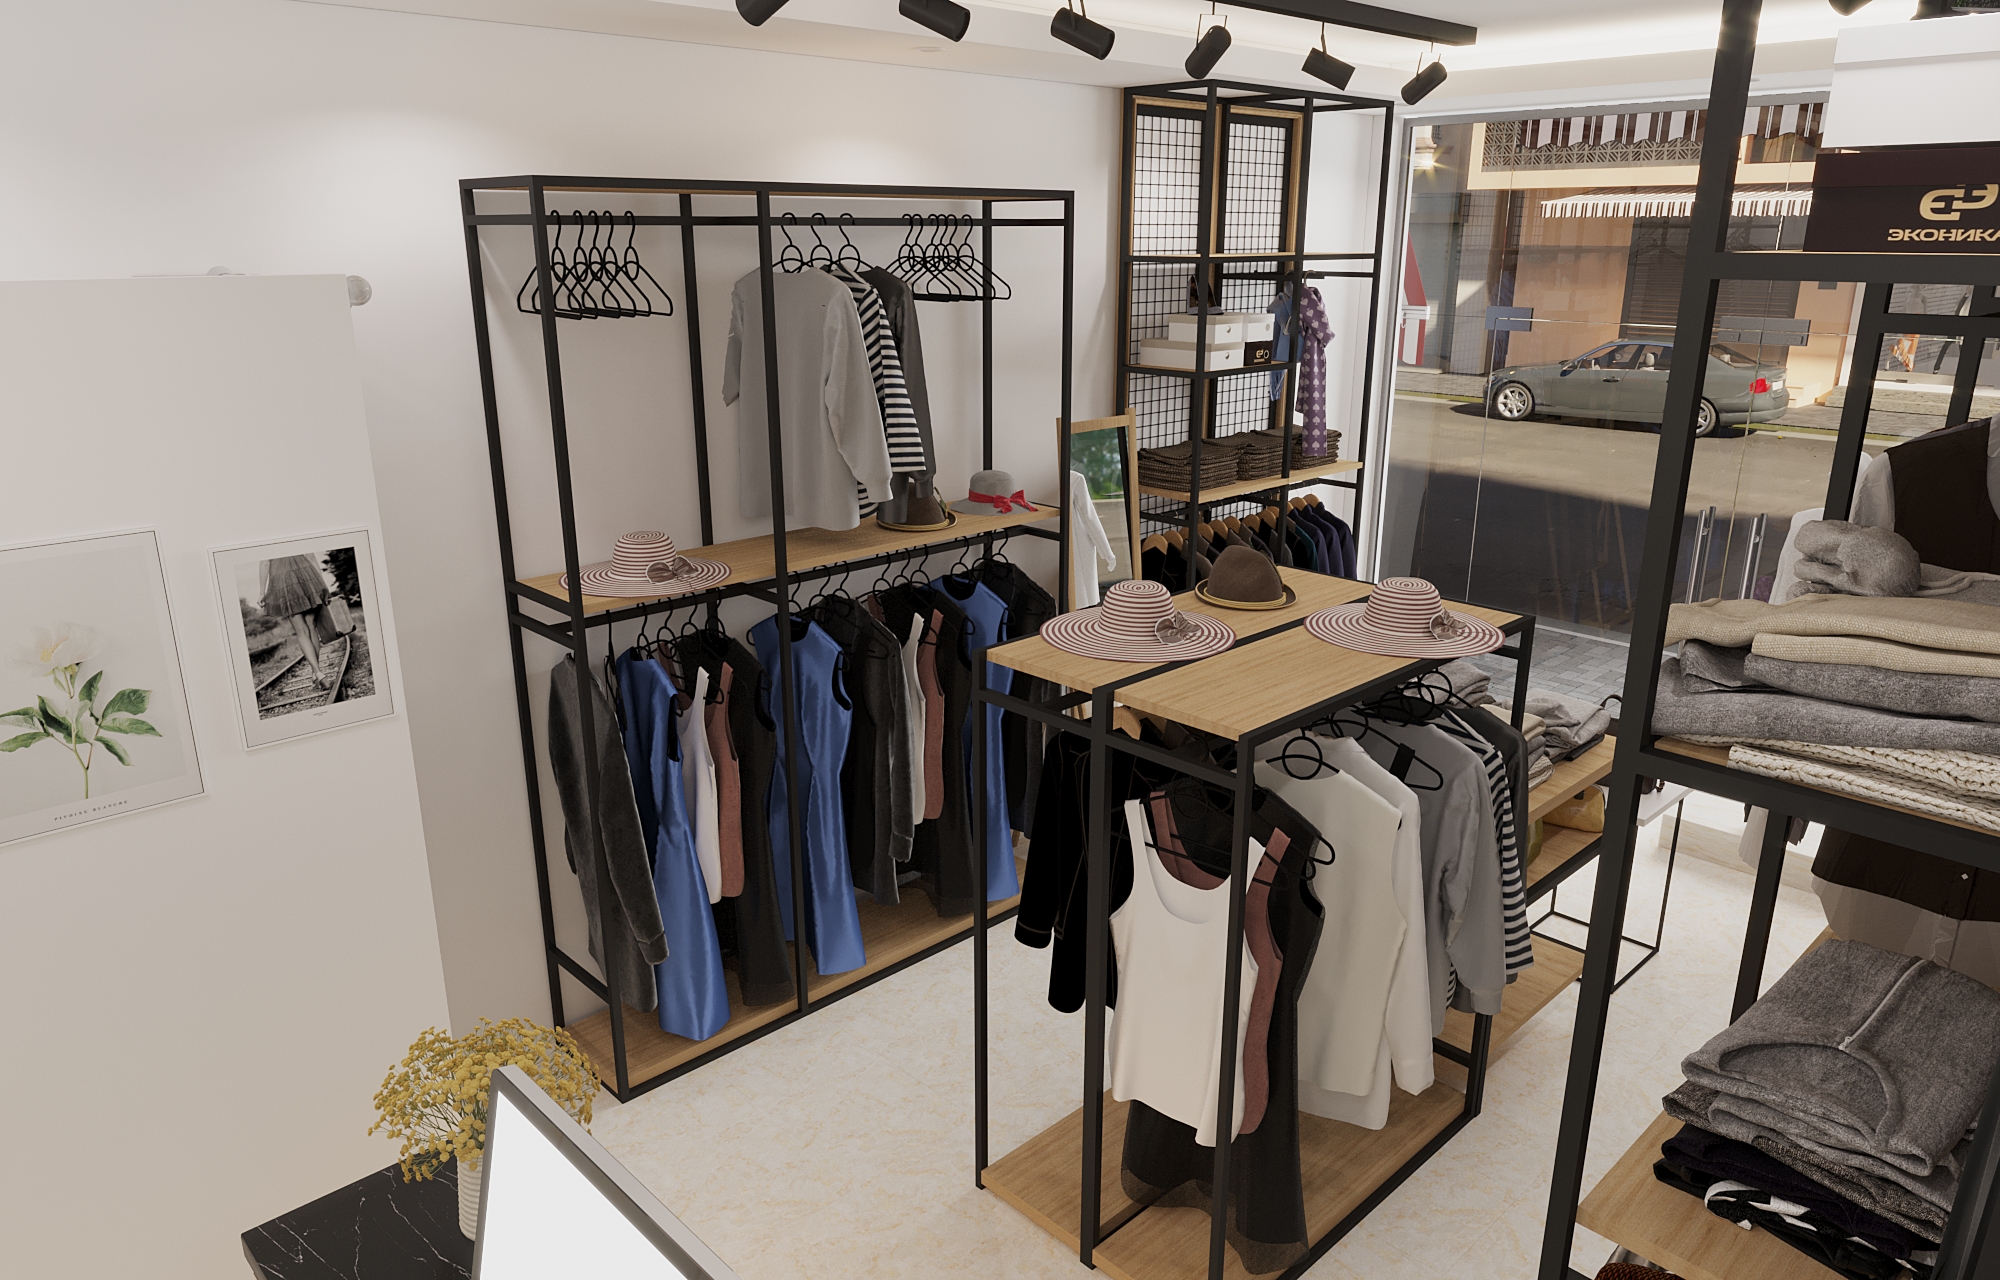 Thiết kế nội thất Shop tại Bắc Ninh Shop quần áo Bắc Ninh 1620805881 3